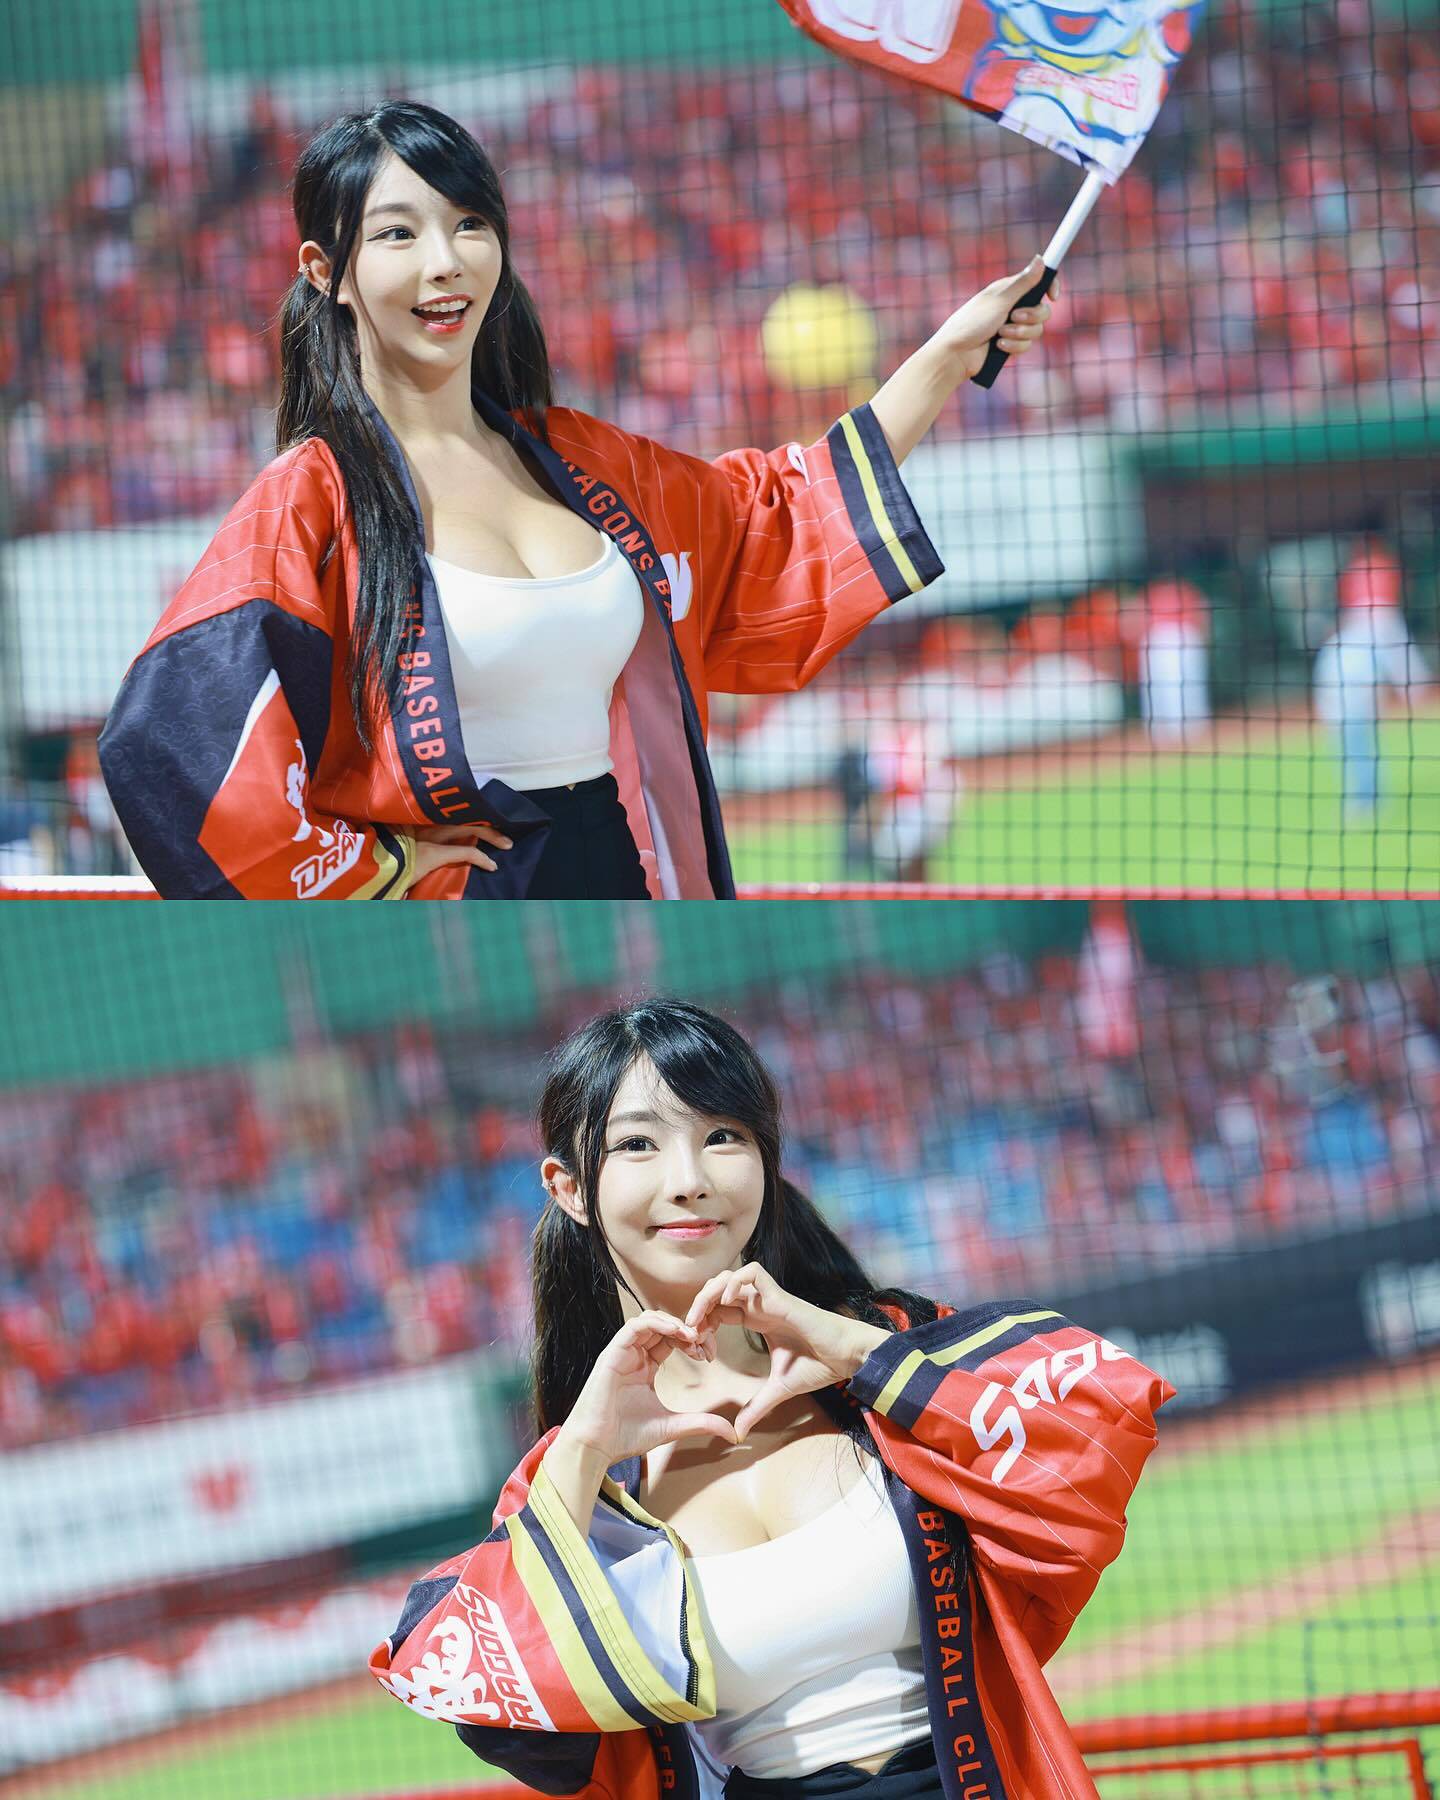 苏小小 秘书 苏小小在台北的天母棒球场进行「台湾啦啦队初体验」。（图片来源：IG@zoeso0930）